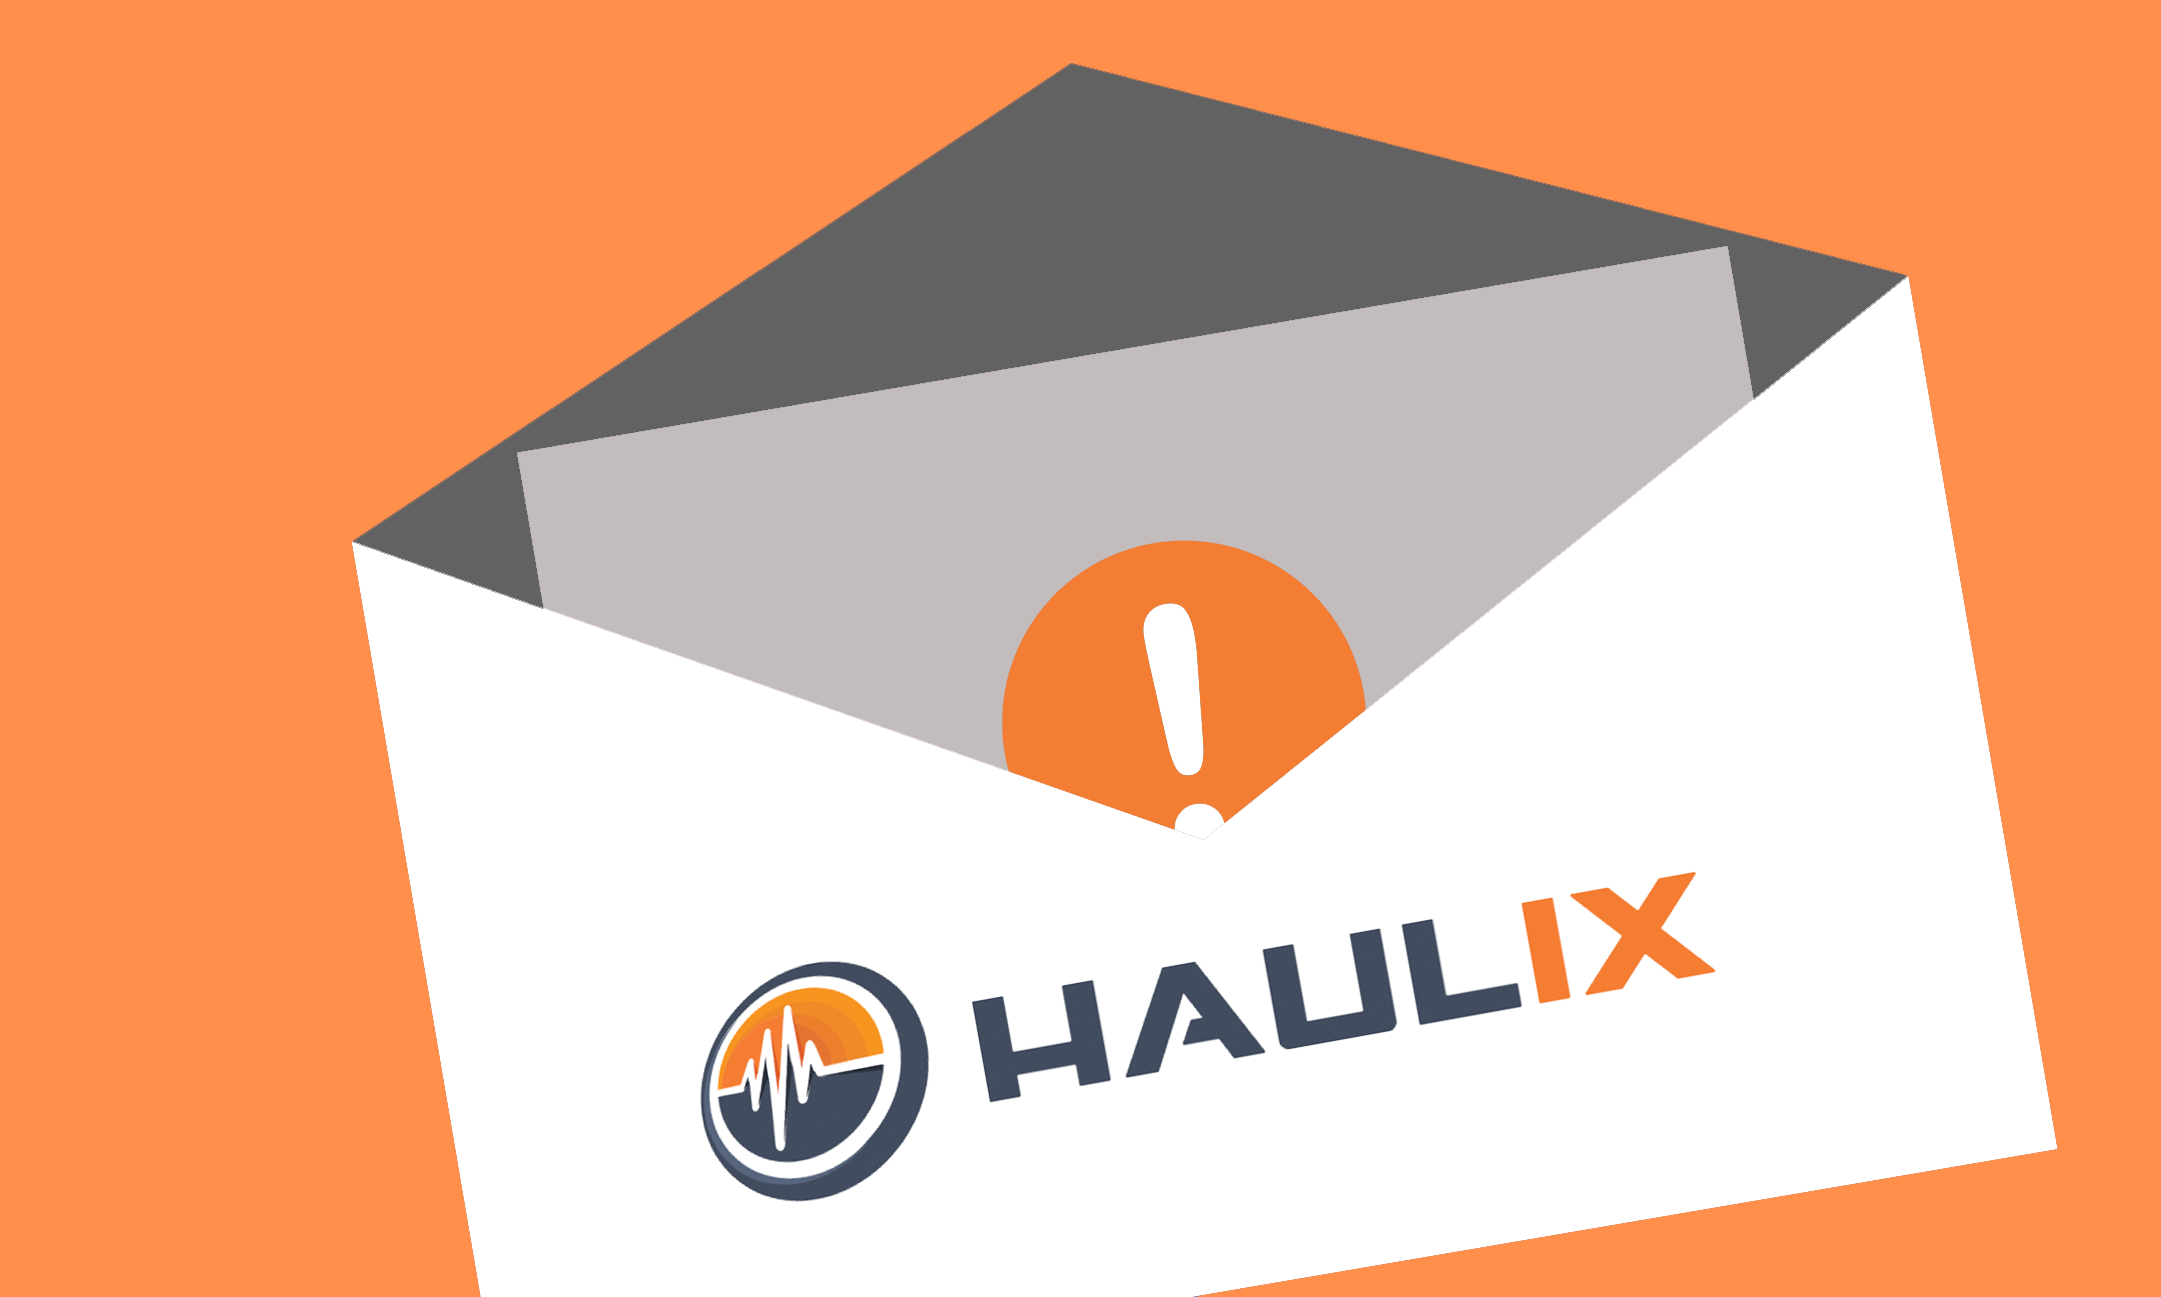 Haulix, Haulix Campaigns, Haulix Promos, Haulix Scheduling, Promotional Marketing